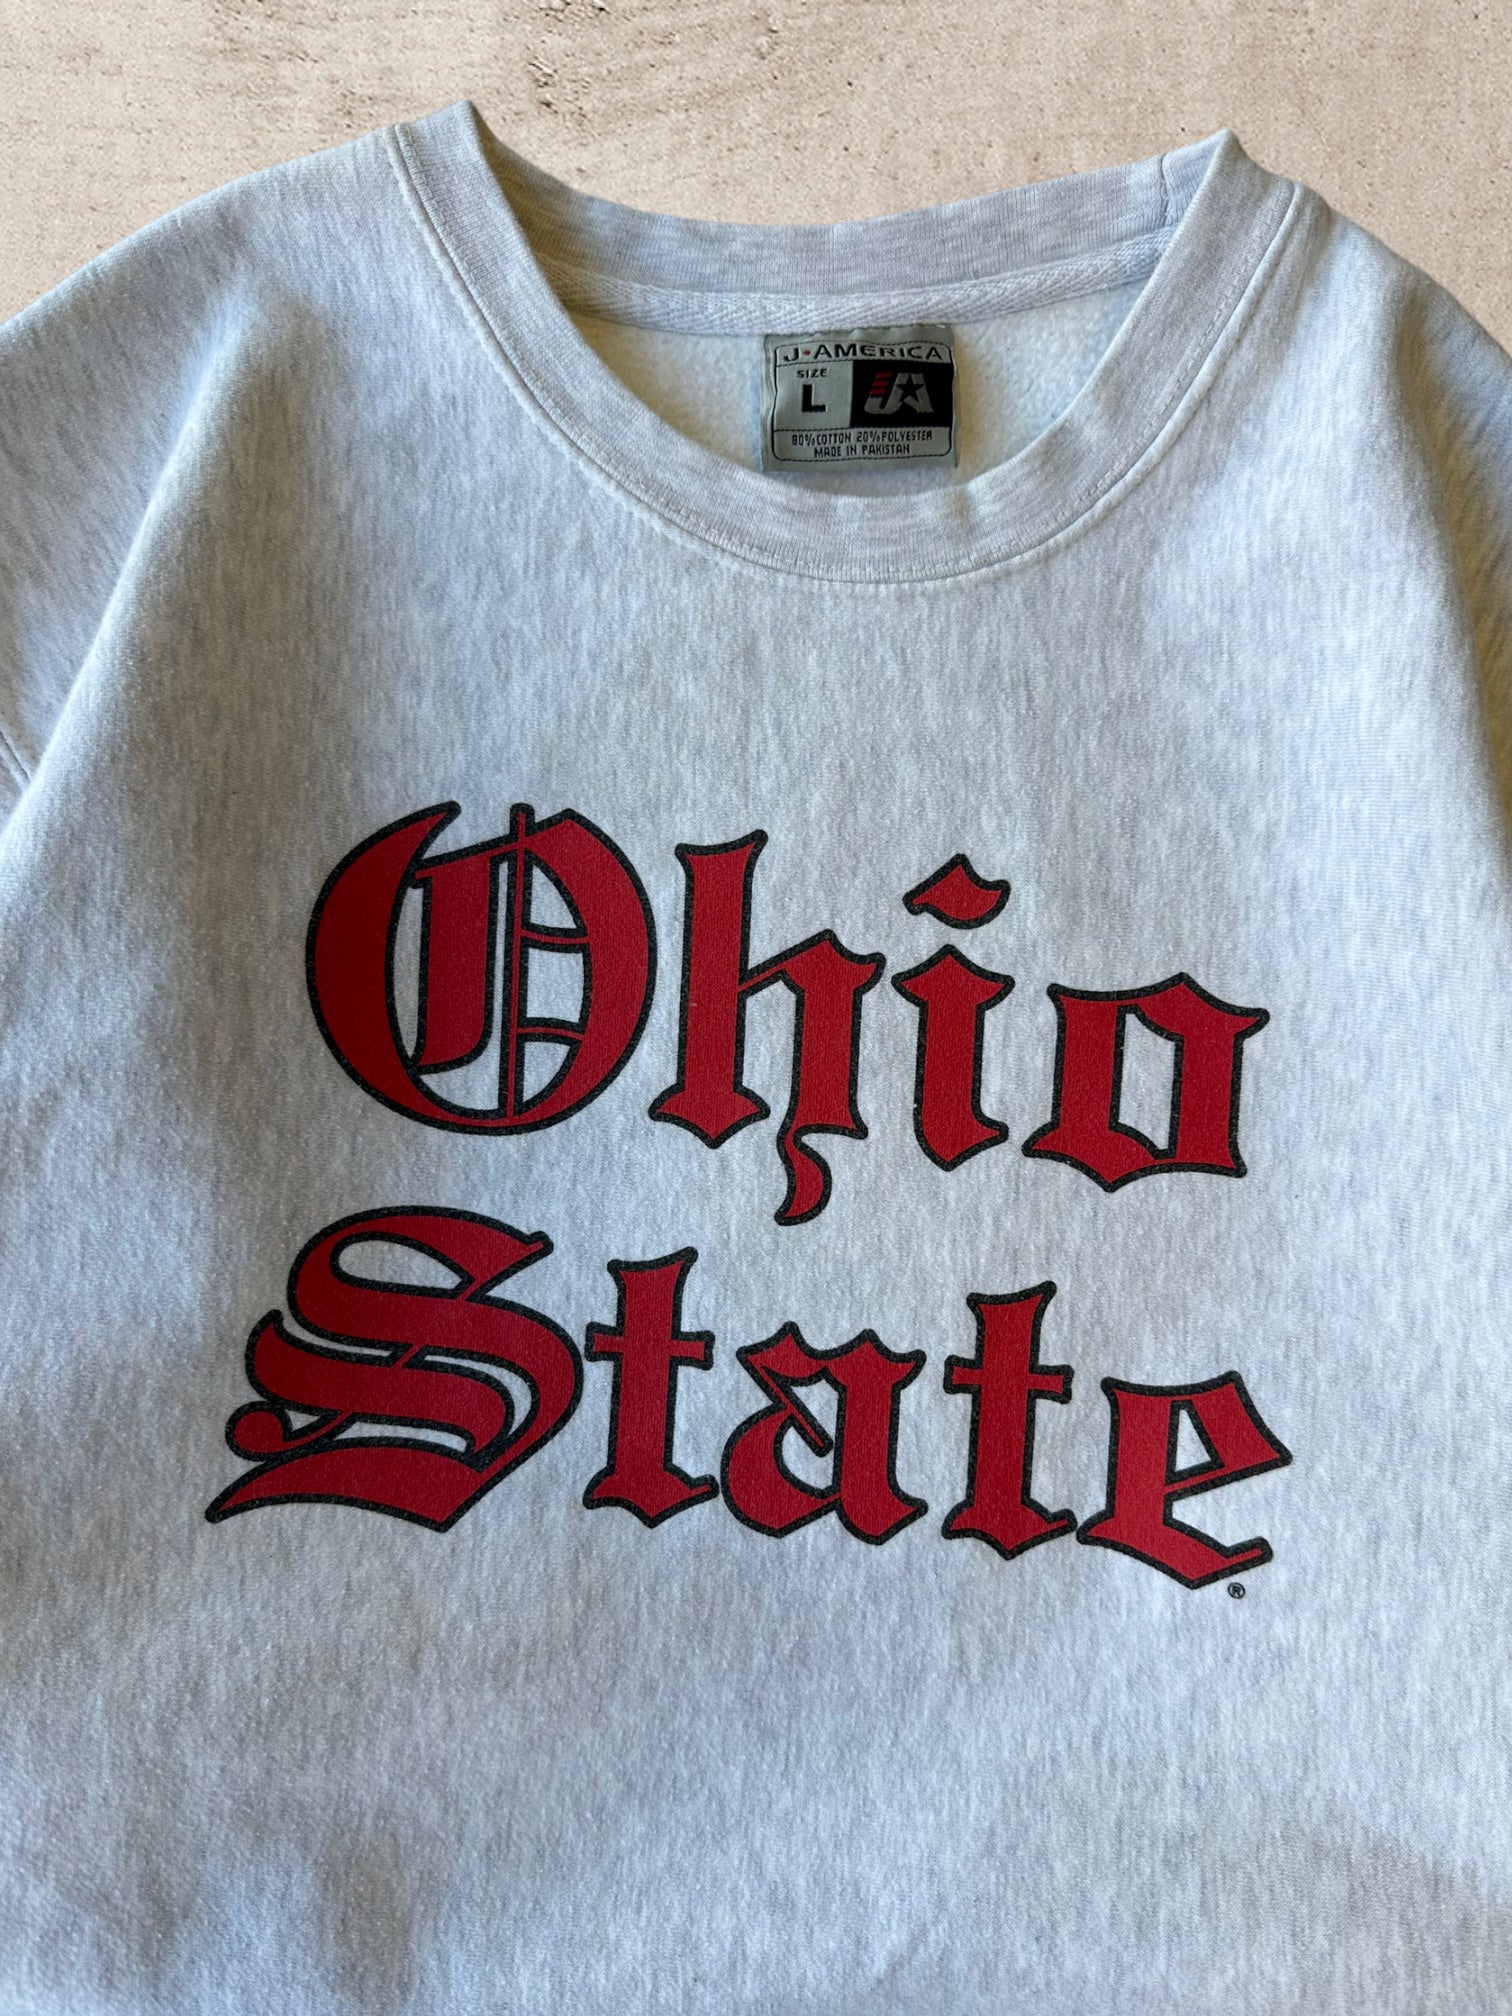 90s Ohio State University Crewneck - Large